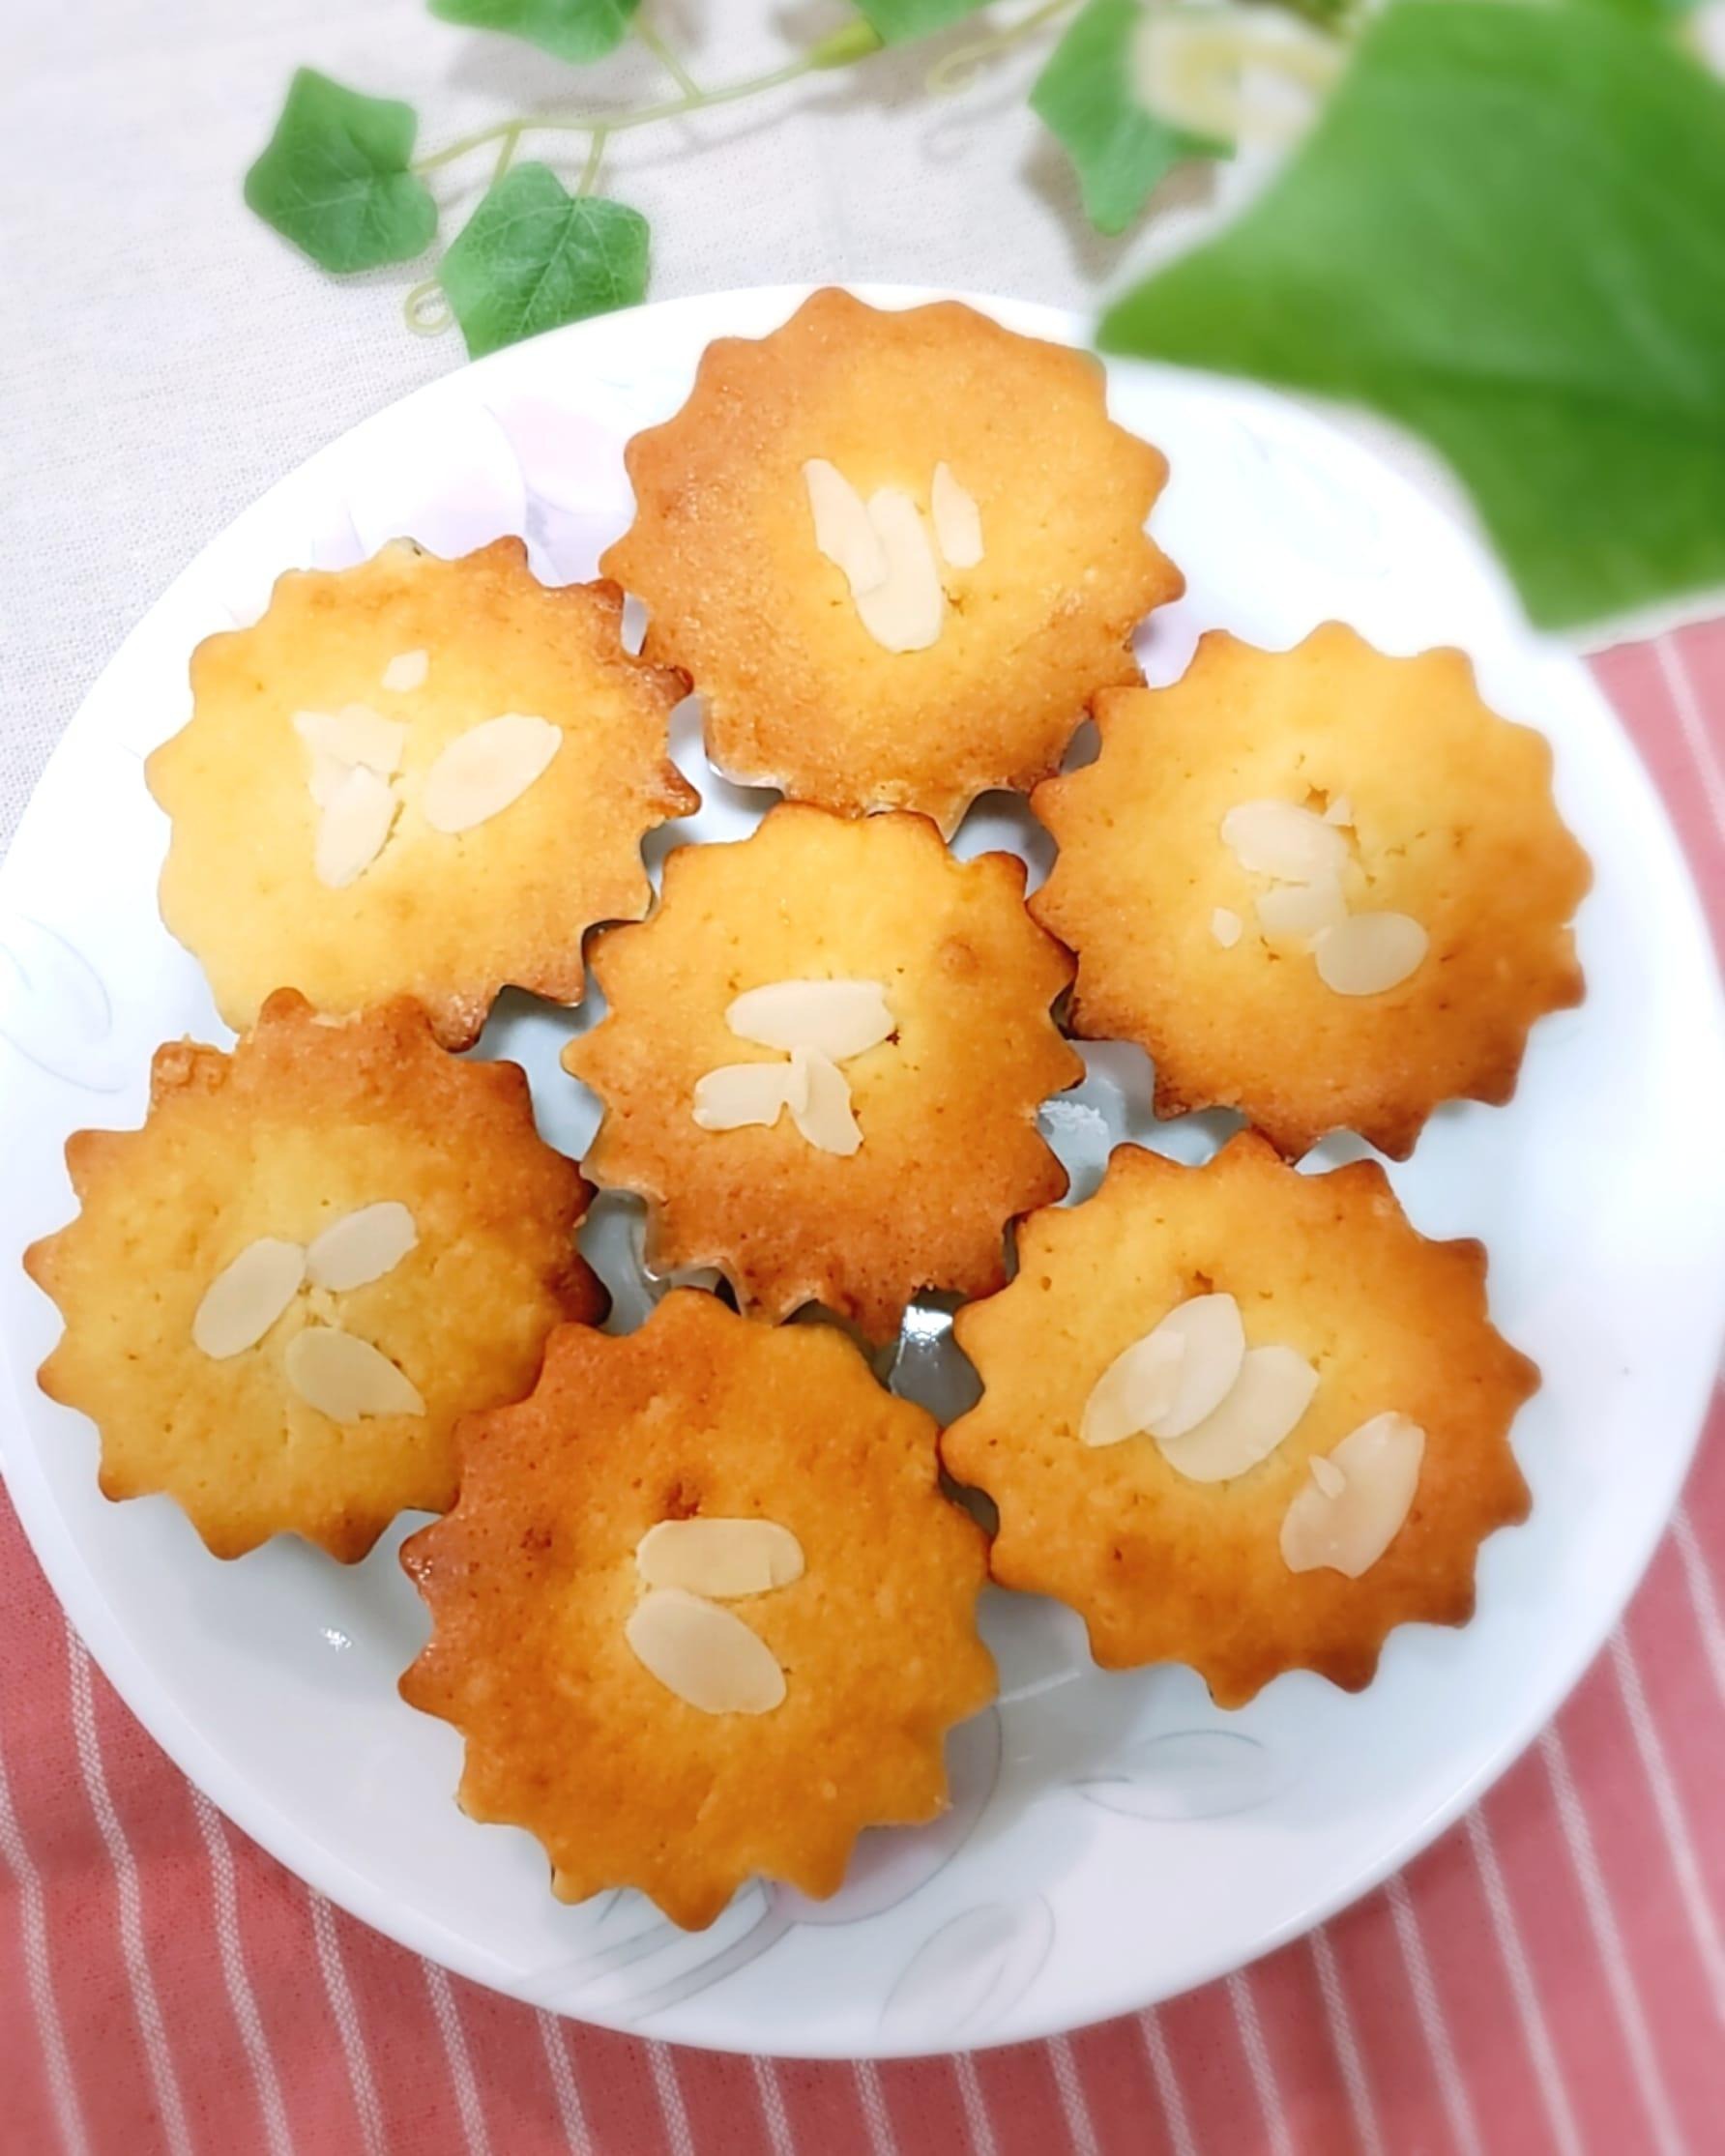 オレンジ香るマドレーヌのレシピ 作り方 Haruna 料理教室検索サイト クスパ